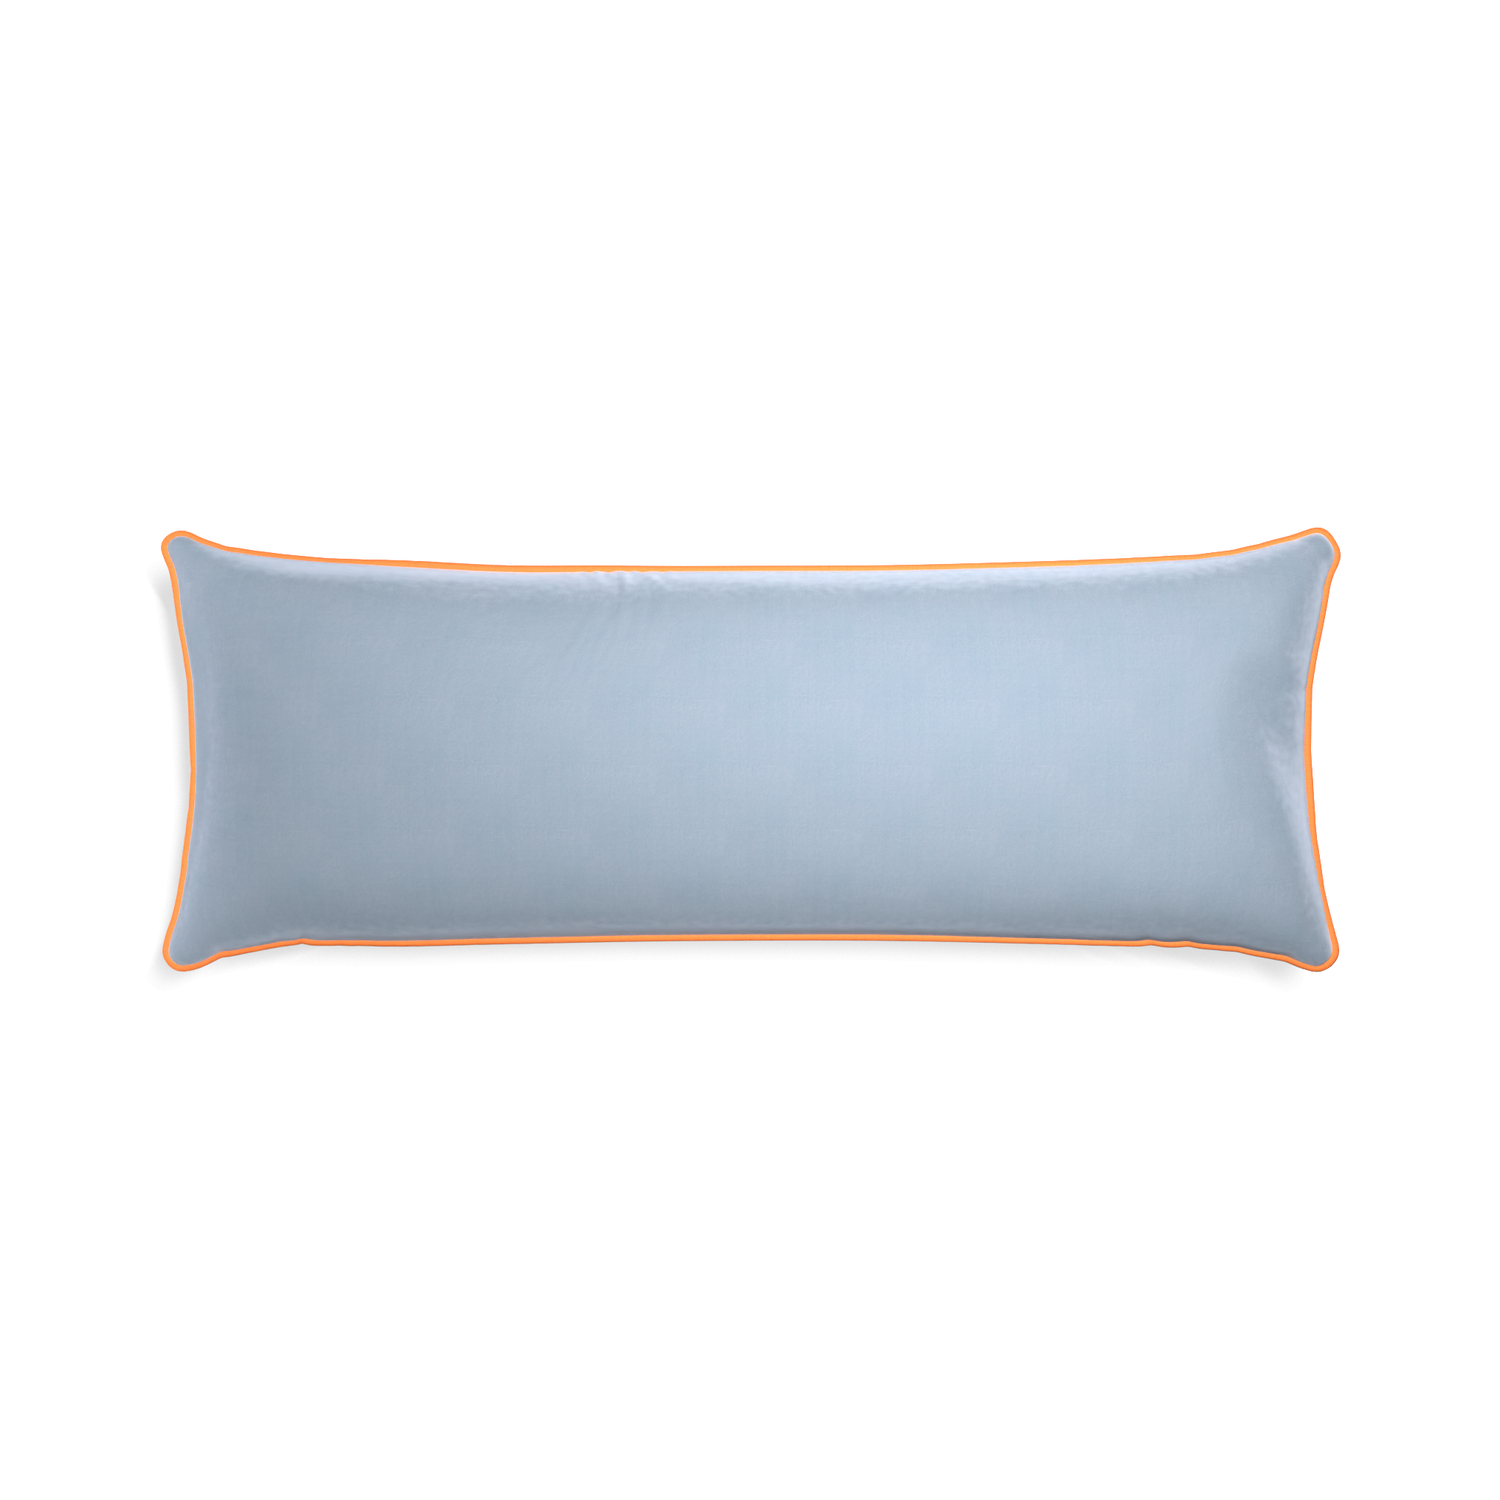 rectangle light blue velvet pillow with orange piping 